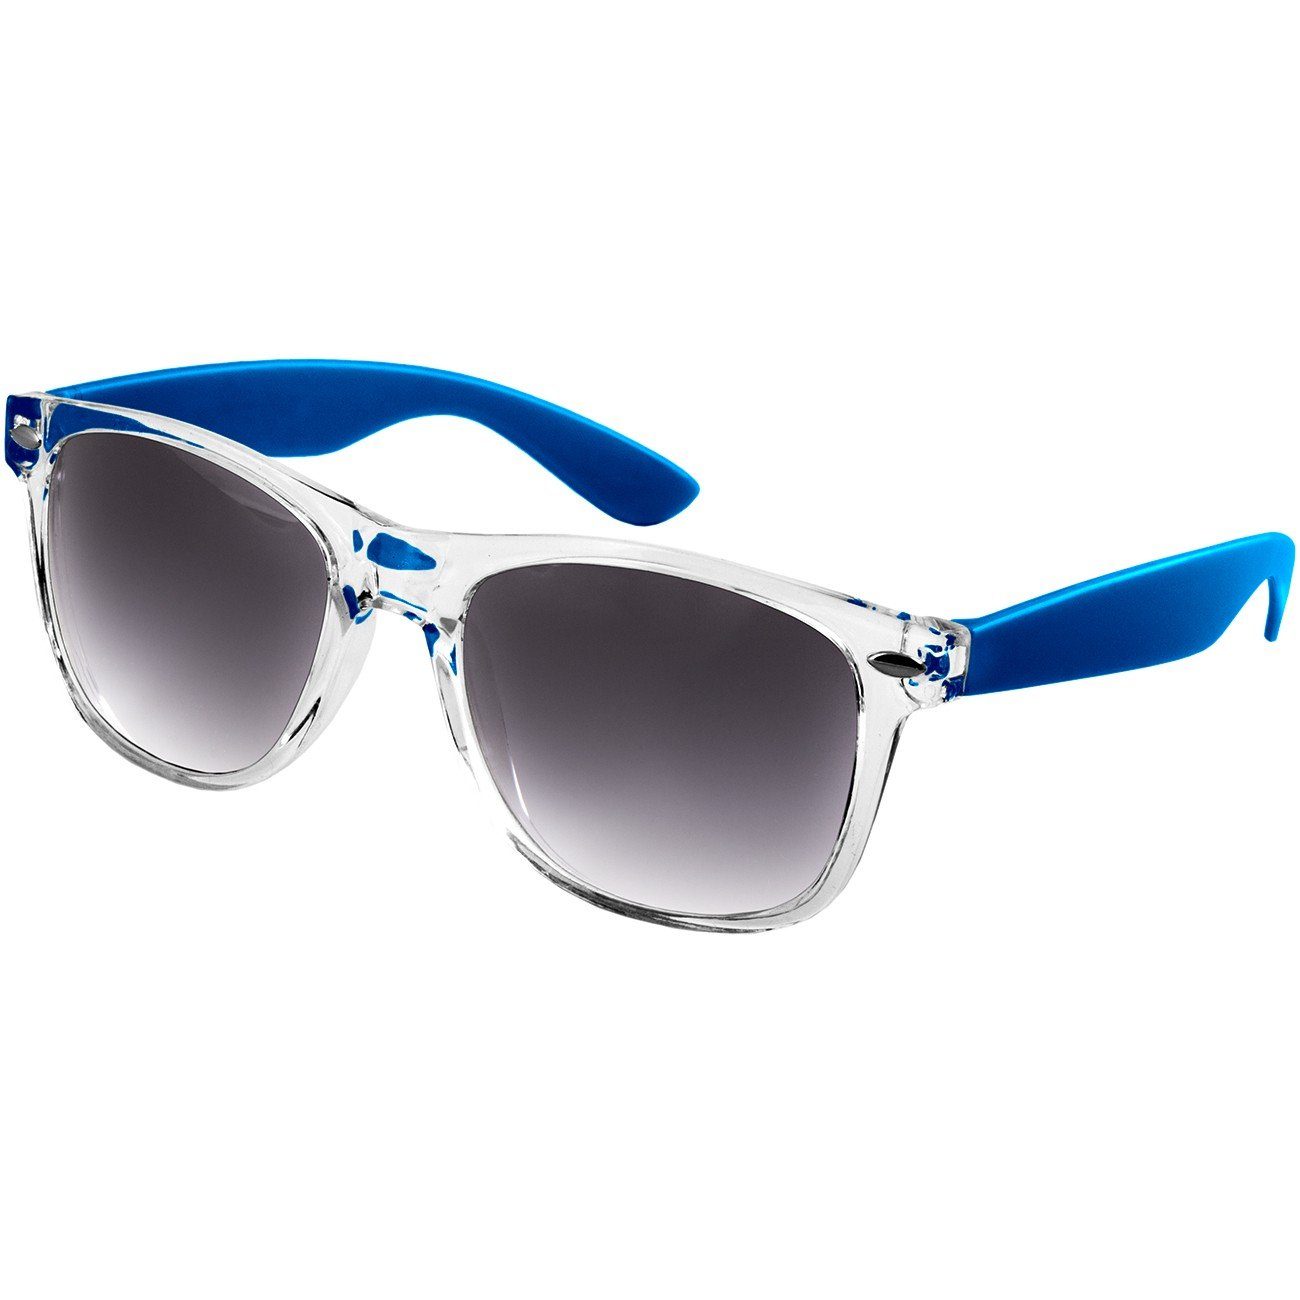 Caspar Sonnenbrille SG017 Damen RETRO Designbrille blau / schwarz getönt